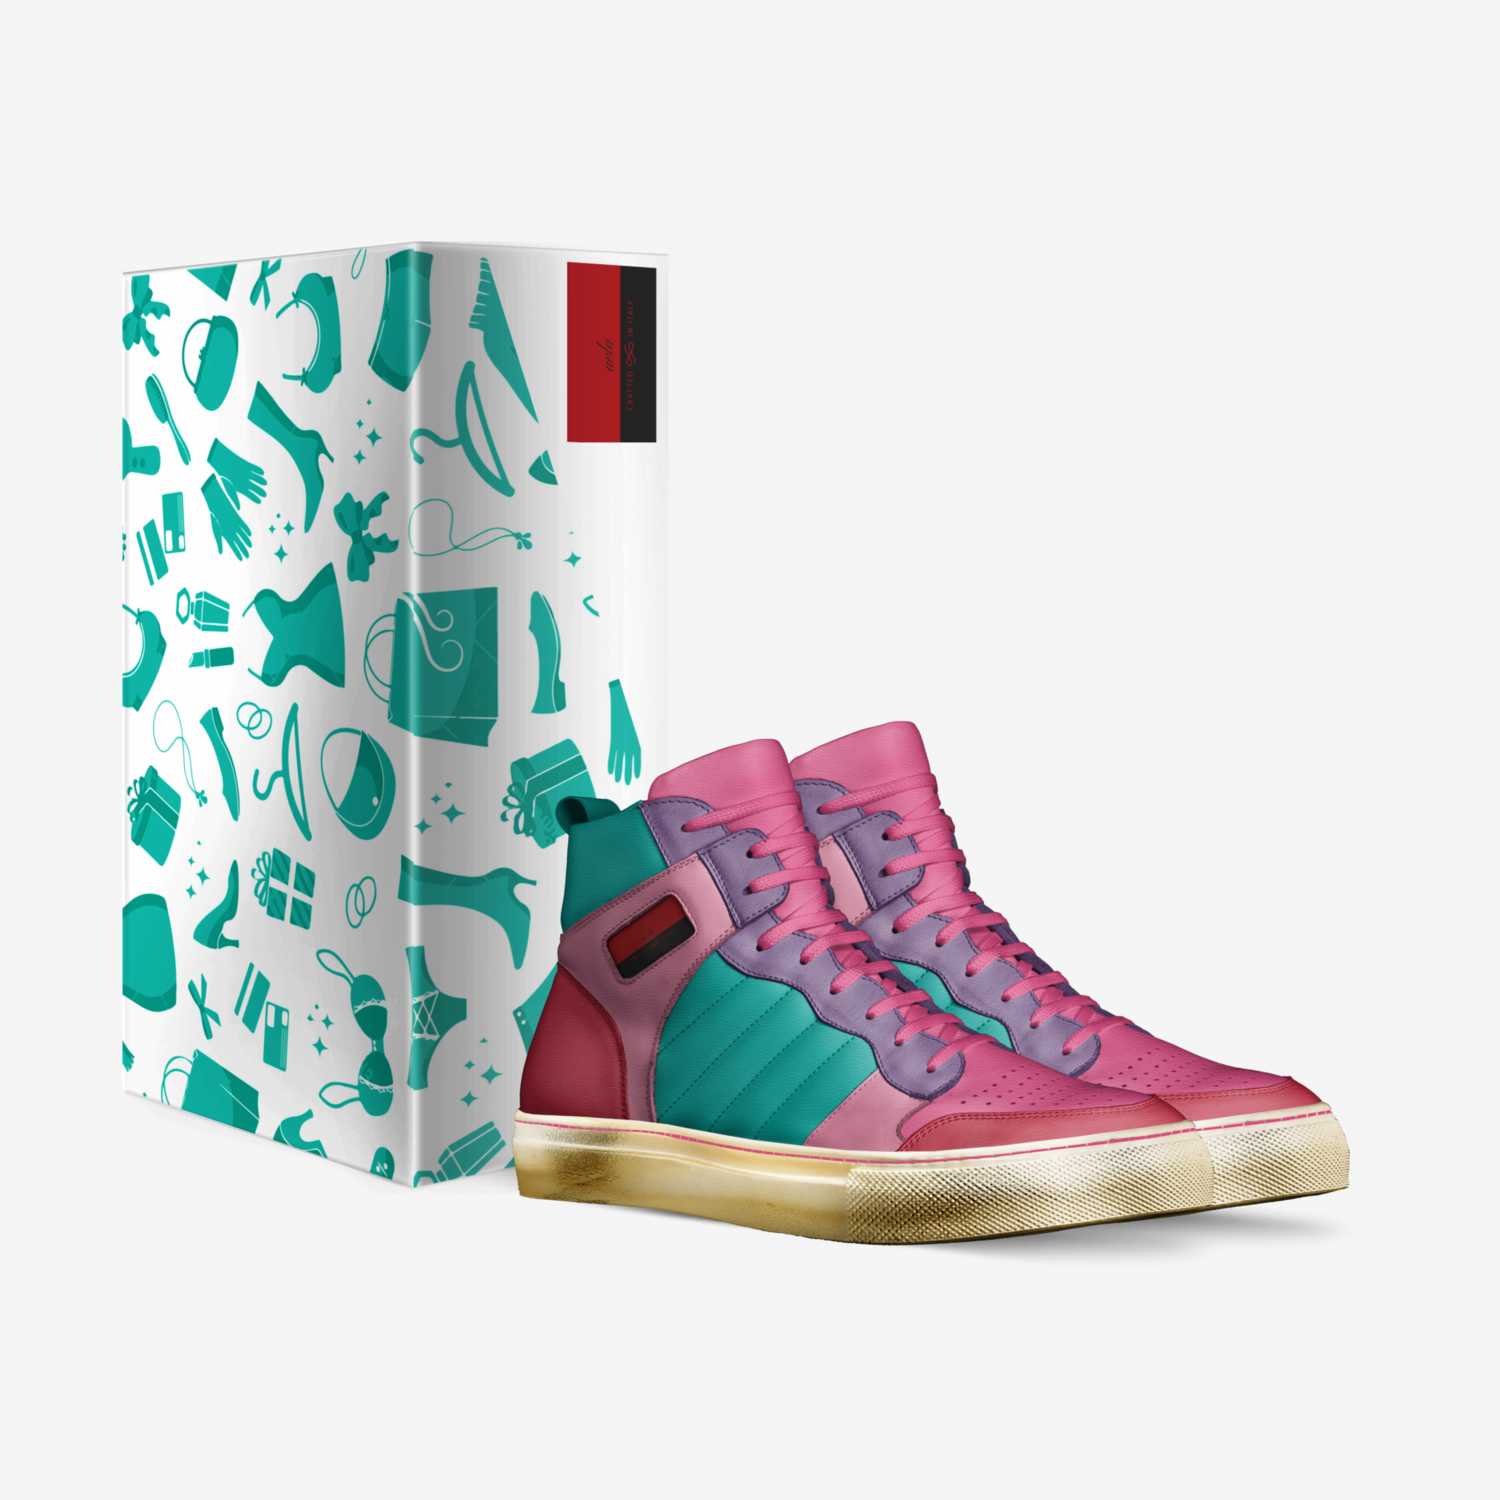 avla custom made in Italy shoes by Katrina Harry | Box view